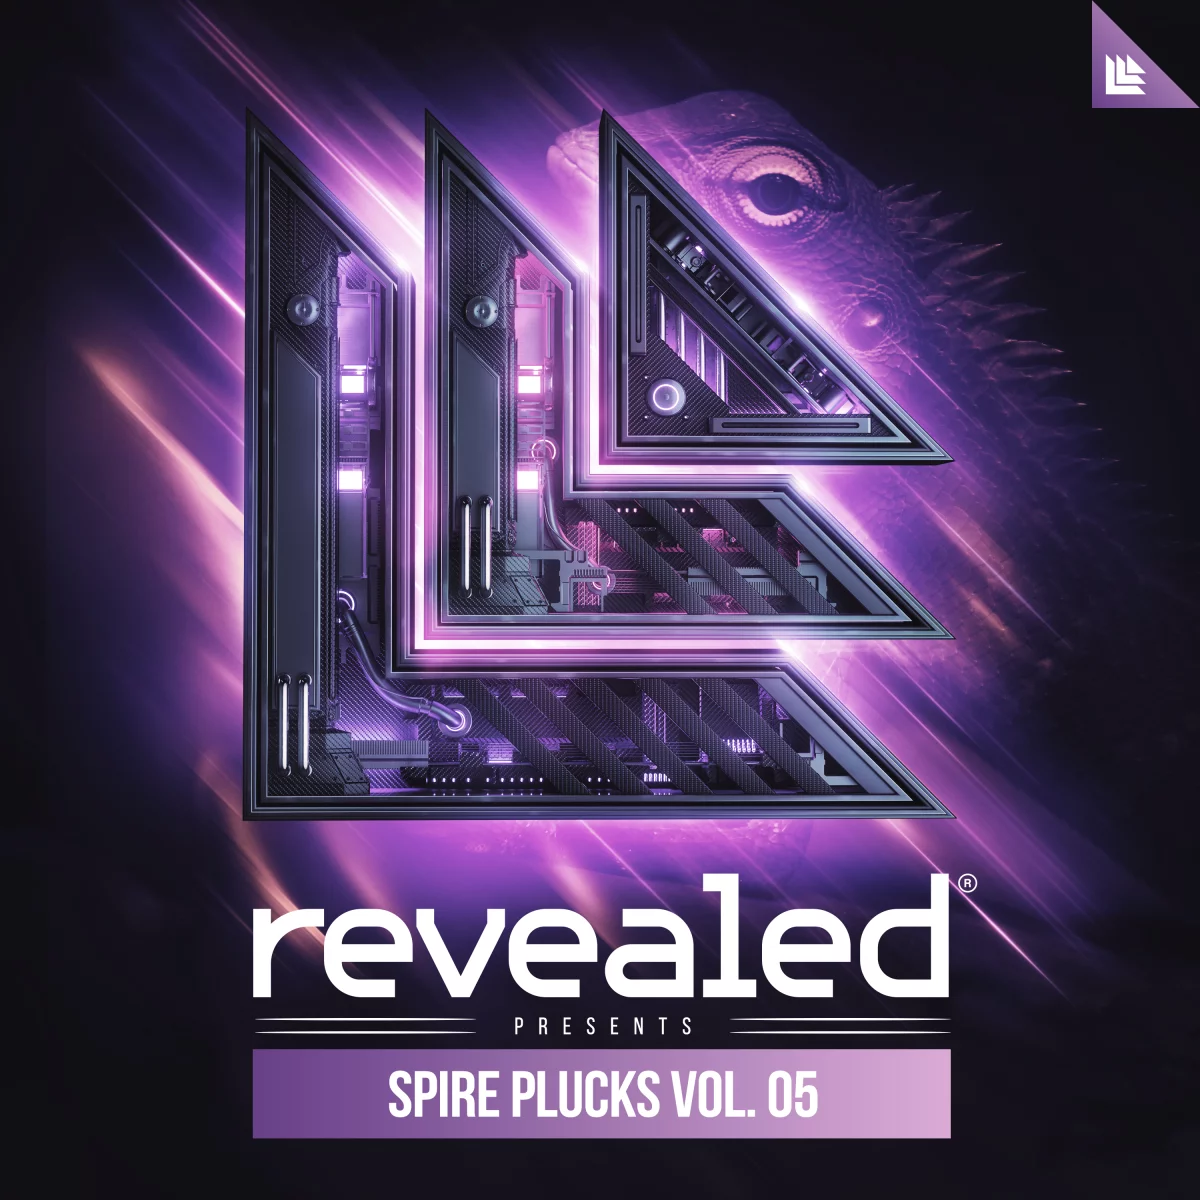 Revealed Spire Plucks Vol. 5 - revealedrec⁠ 